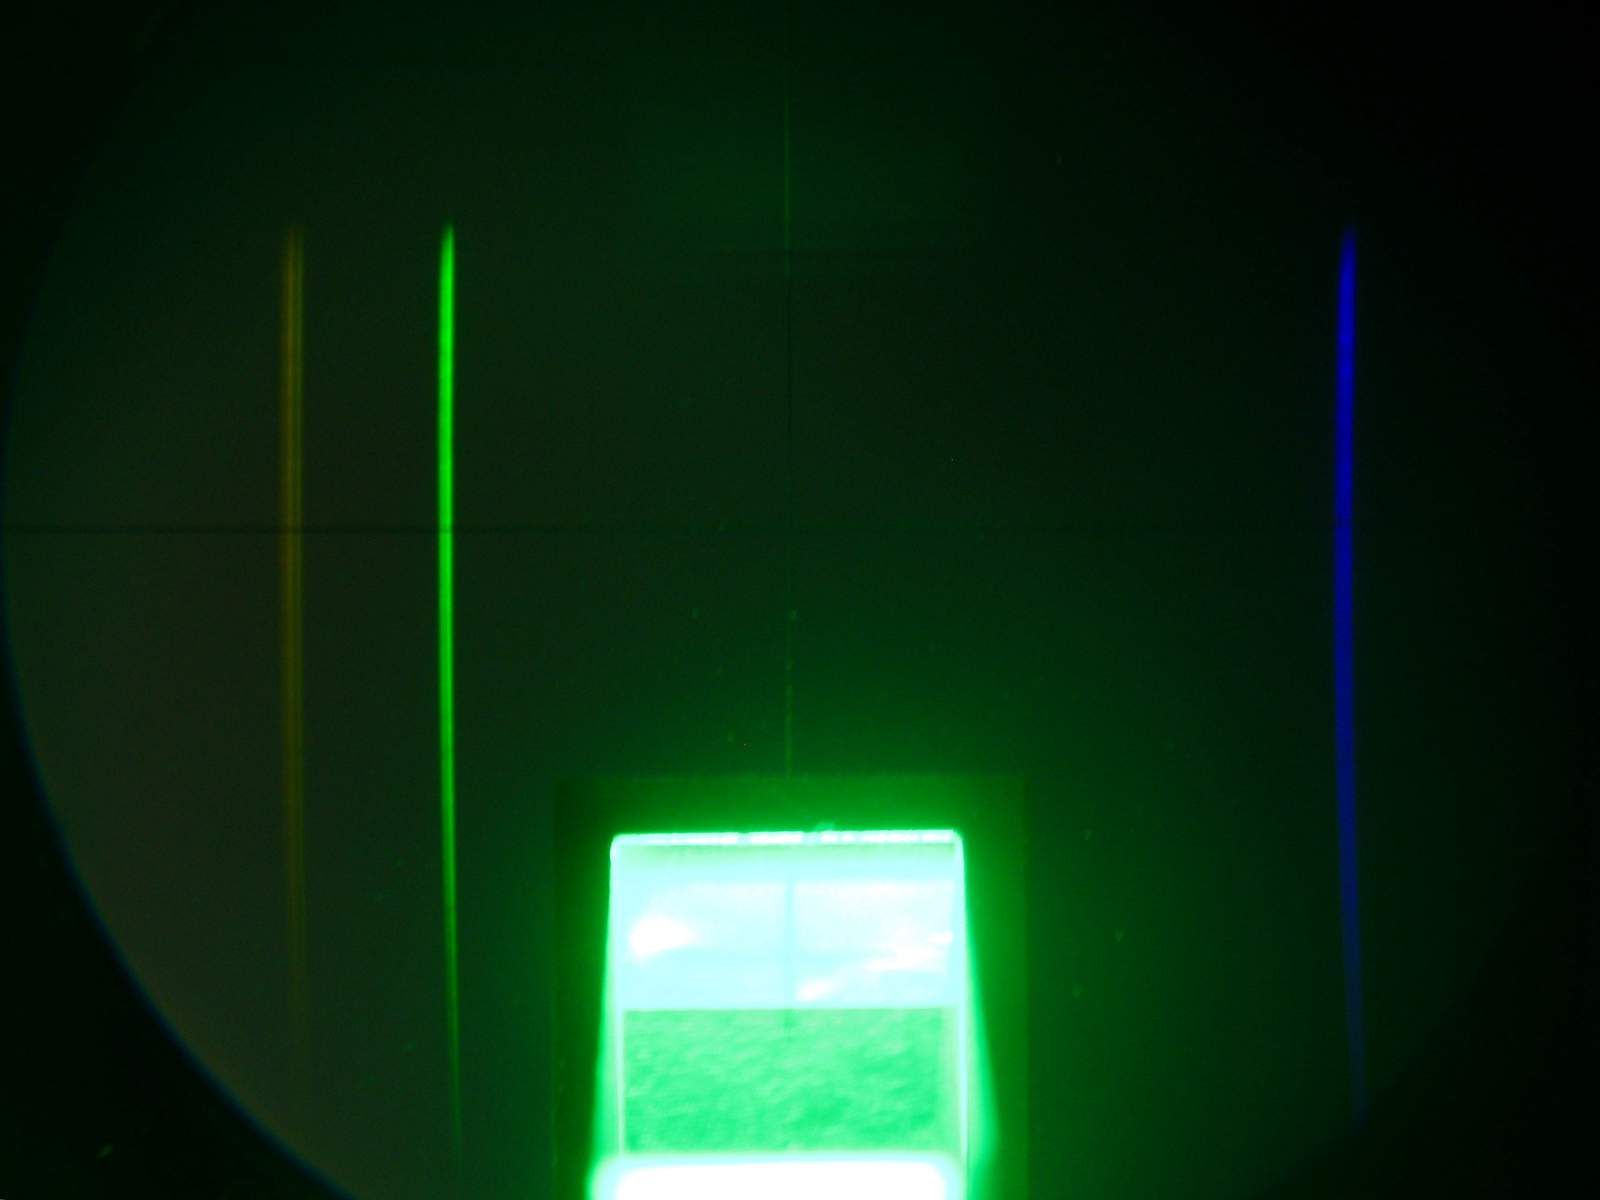 spectrometer-LPM-Hg